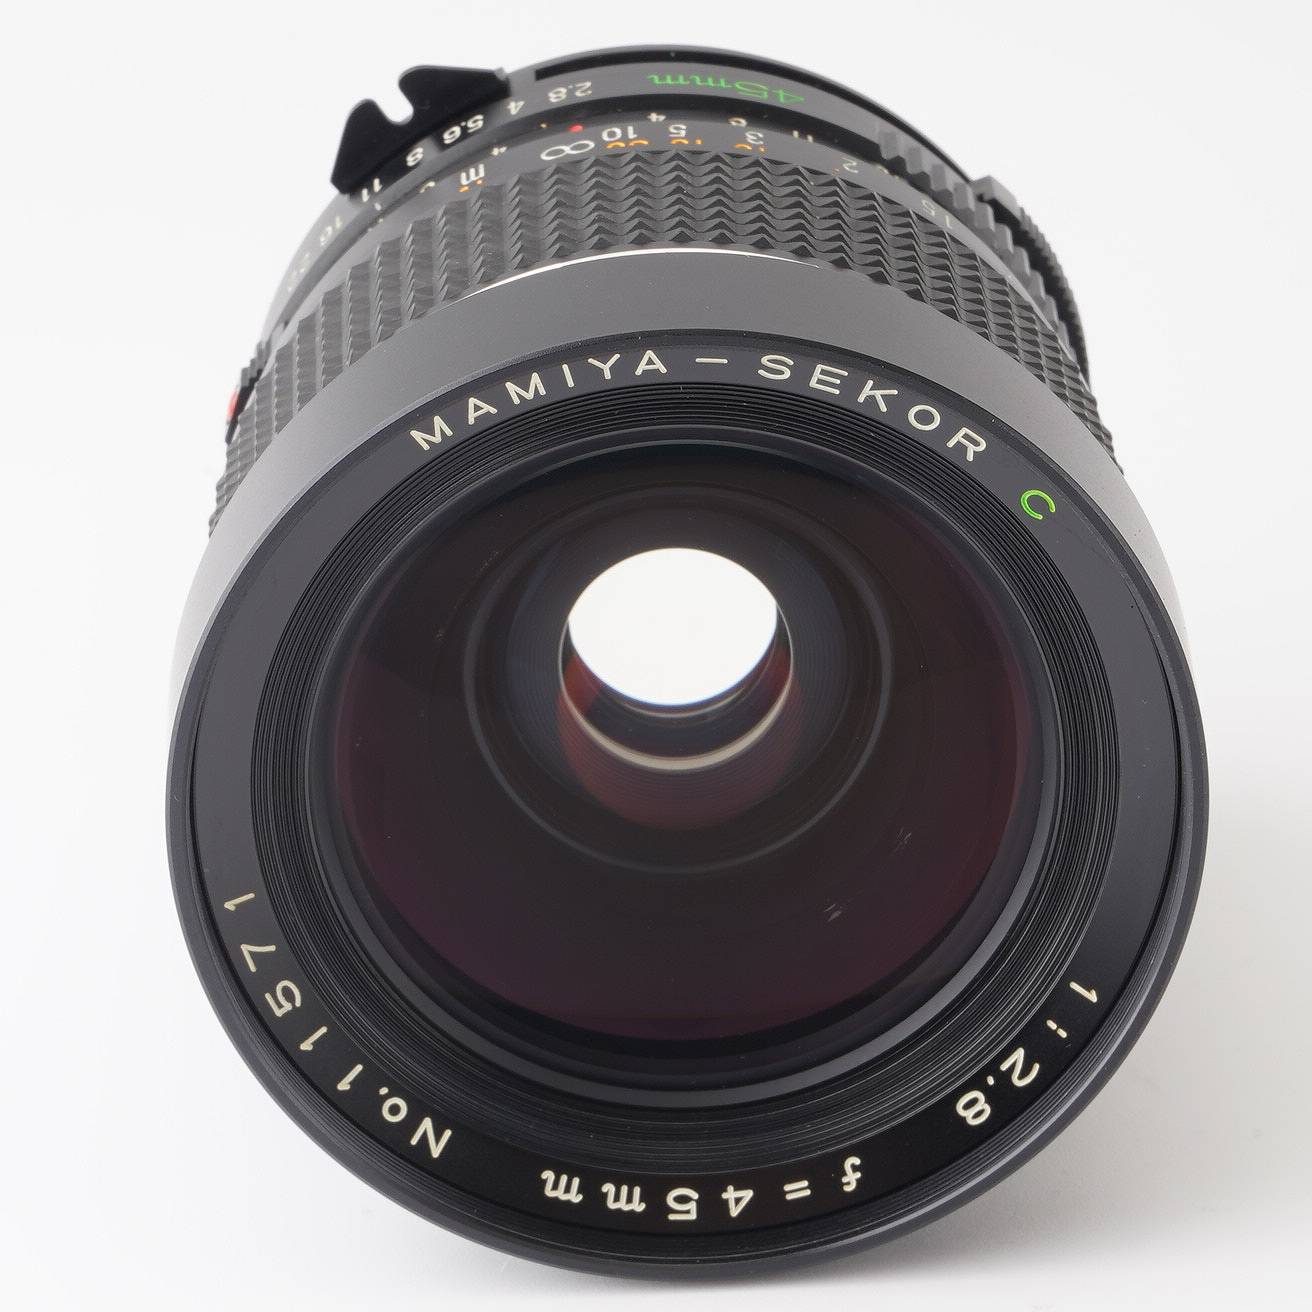 Mamiya sekor c 45mm F2.8単焦点レンズ - レンズ(単焦点)